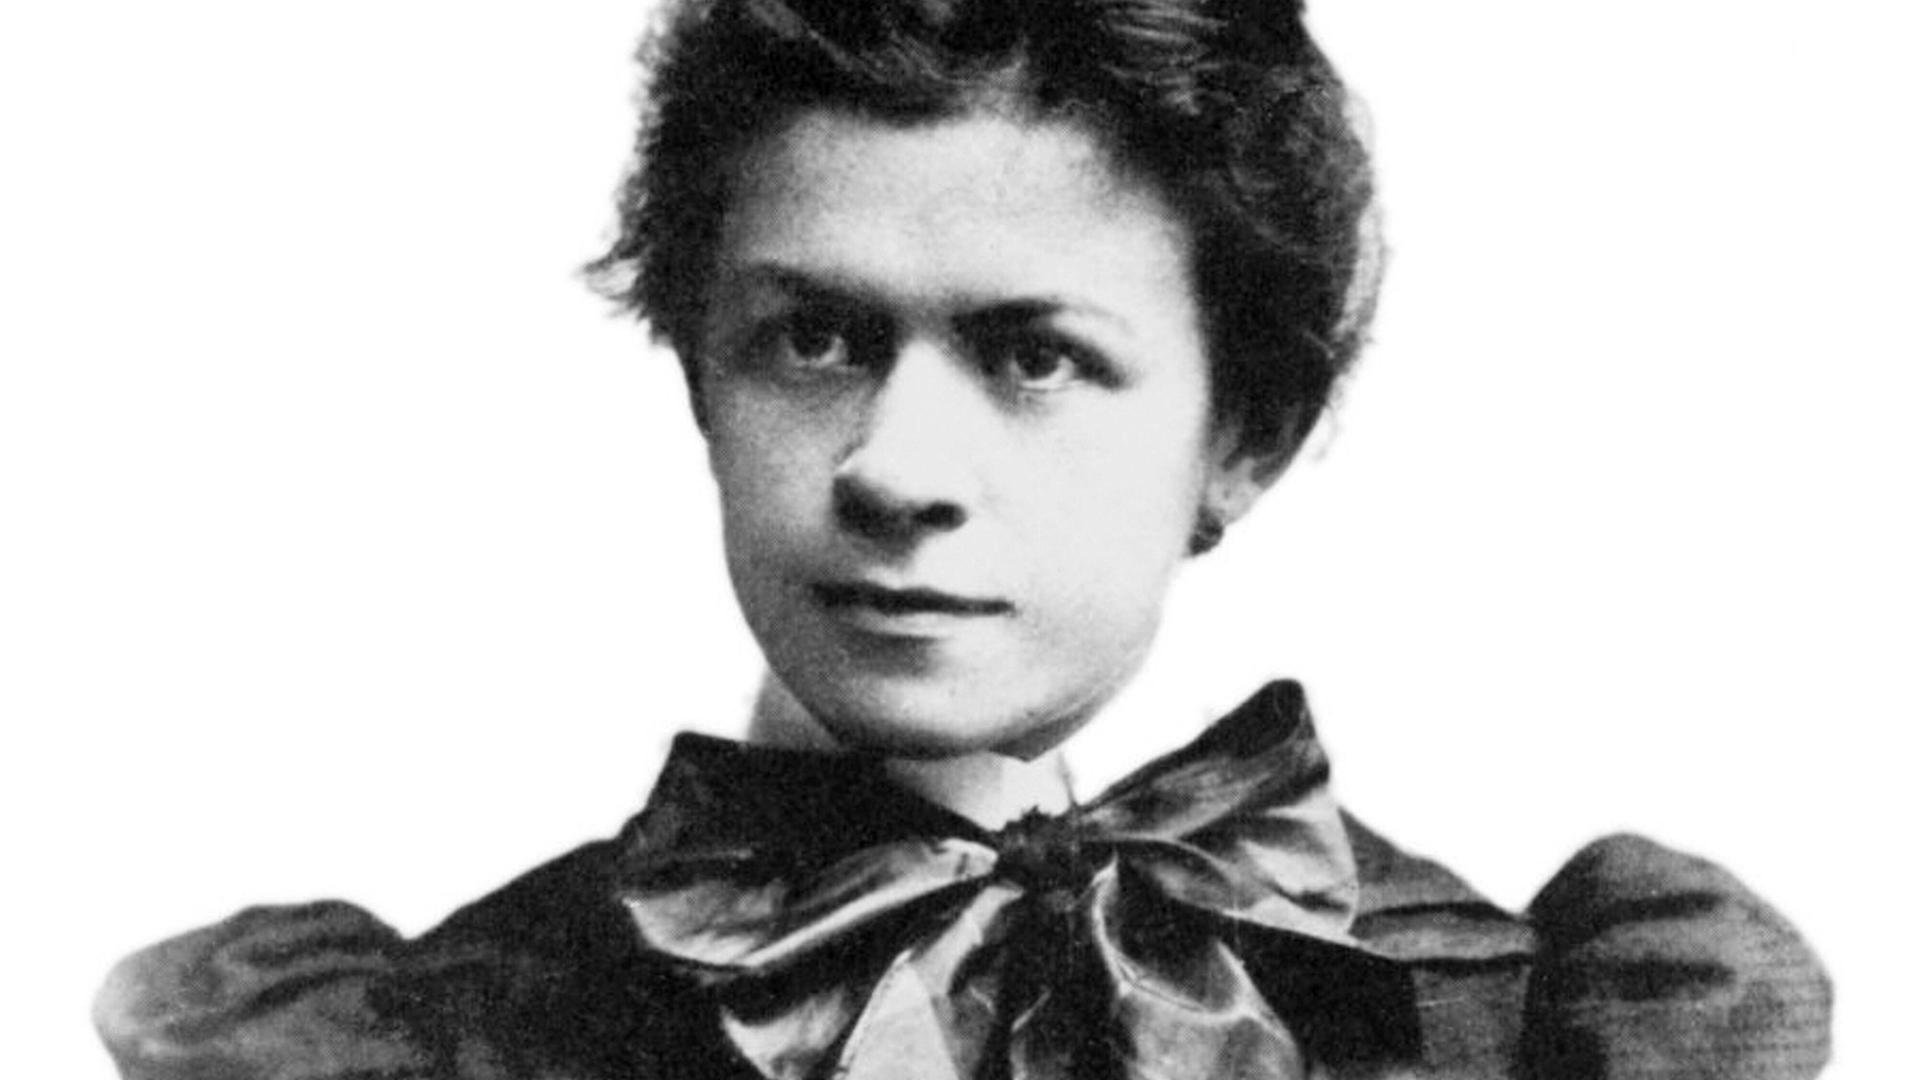 Mileva Marić war eine serbische Physikerin. Sie war die einzige Frau unter Albert Einsteins Kommilitonen am Zürcher Polytechnikum. 